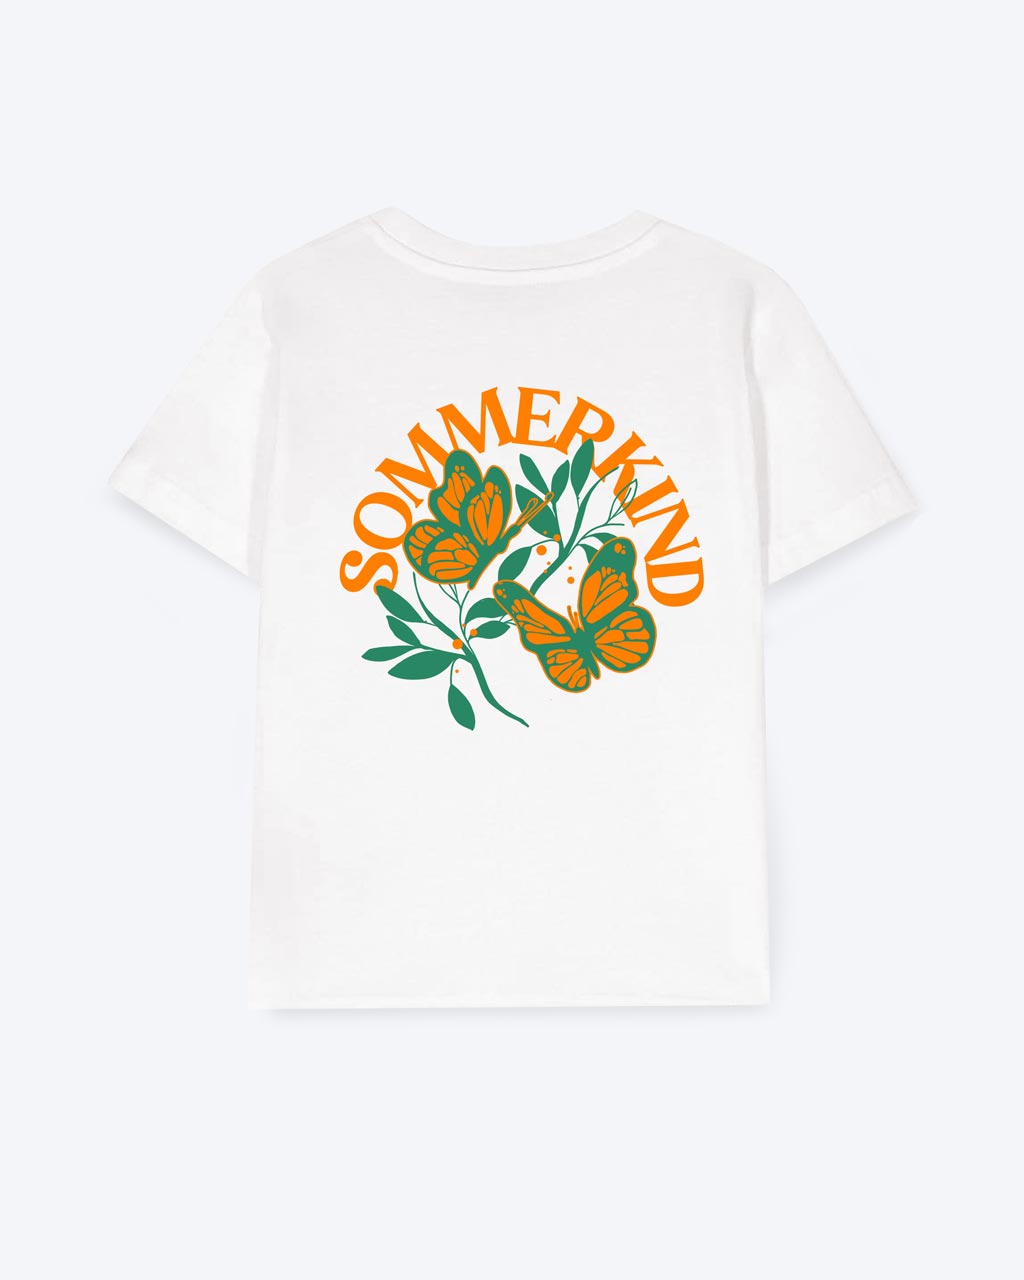 Weißes T-Shirt mit einem Schmetterlings Motiv, die über einem grünen Ast fliegen,  und einer orangen "SOMMERKIND" Schrift.